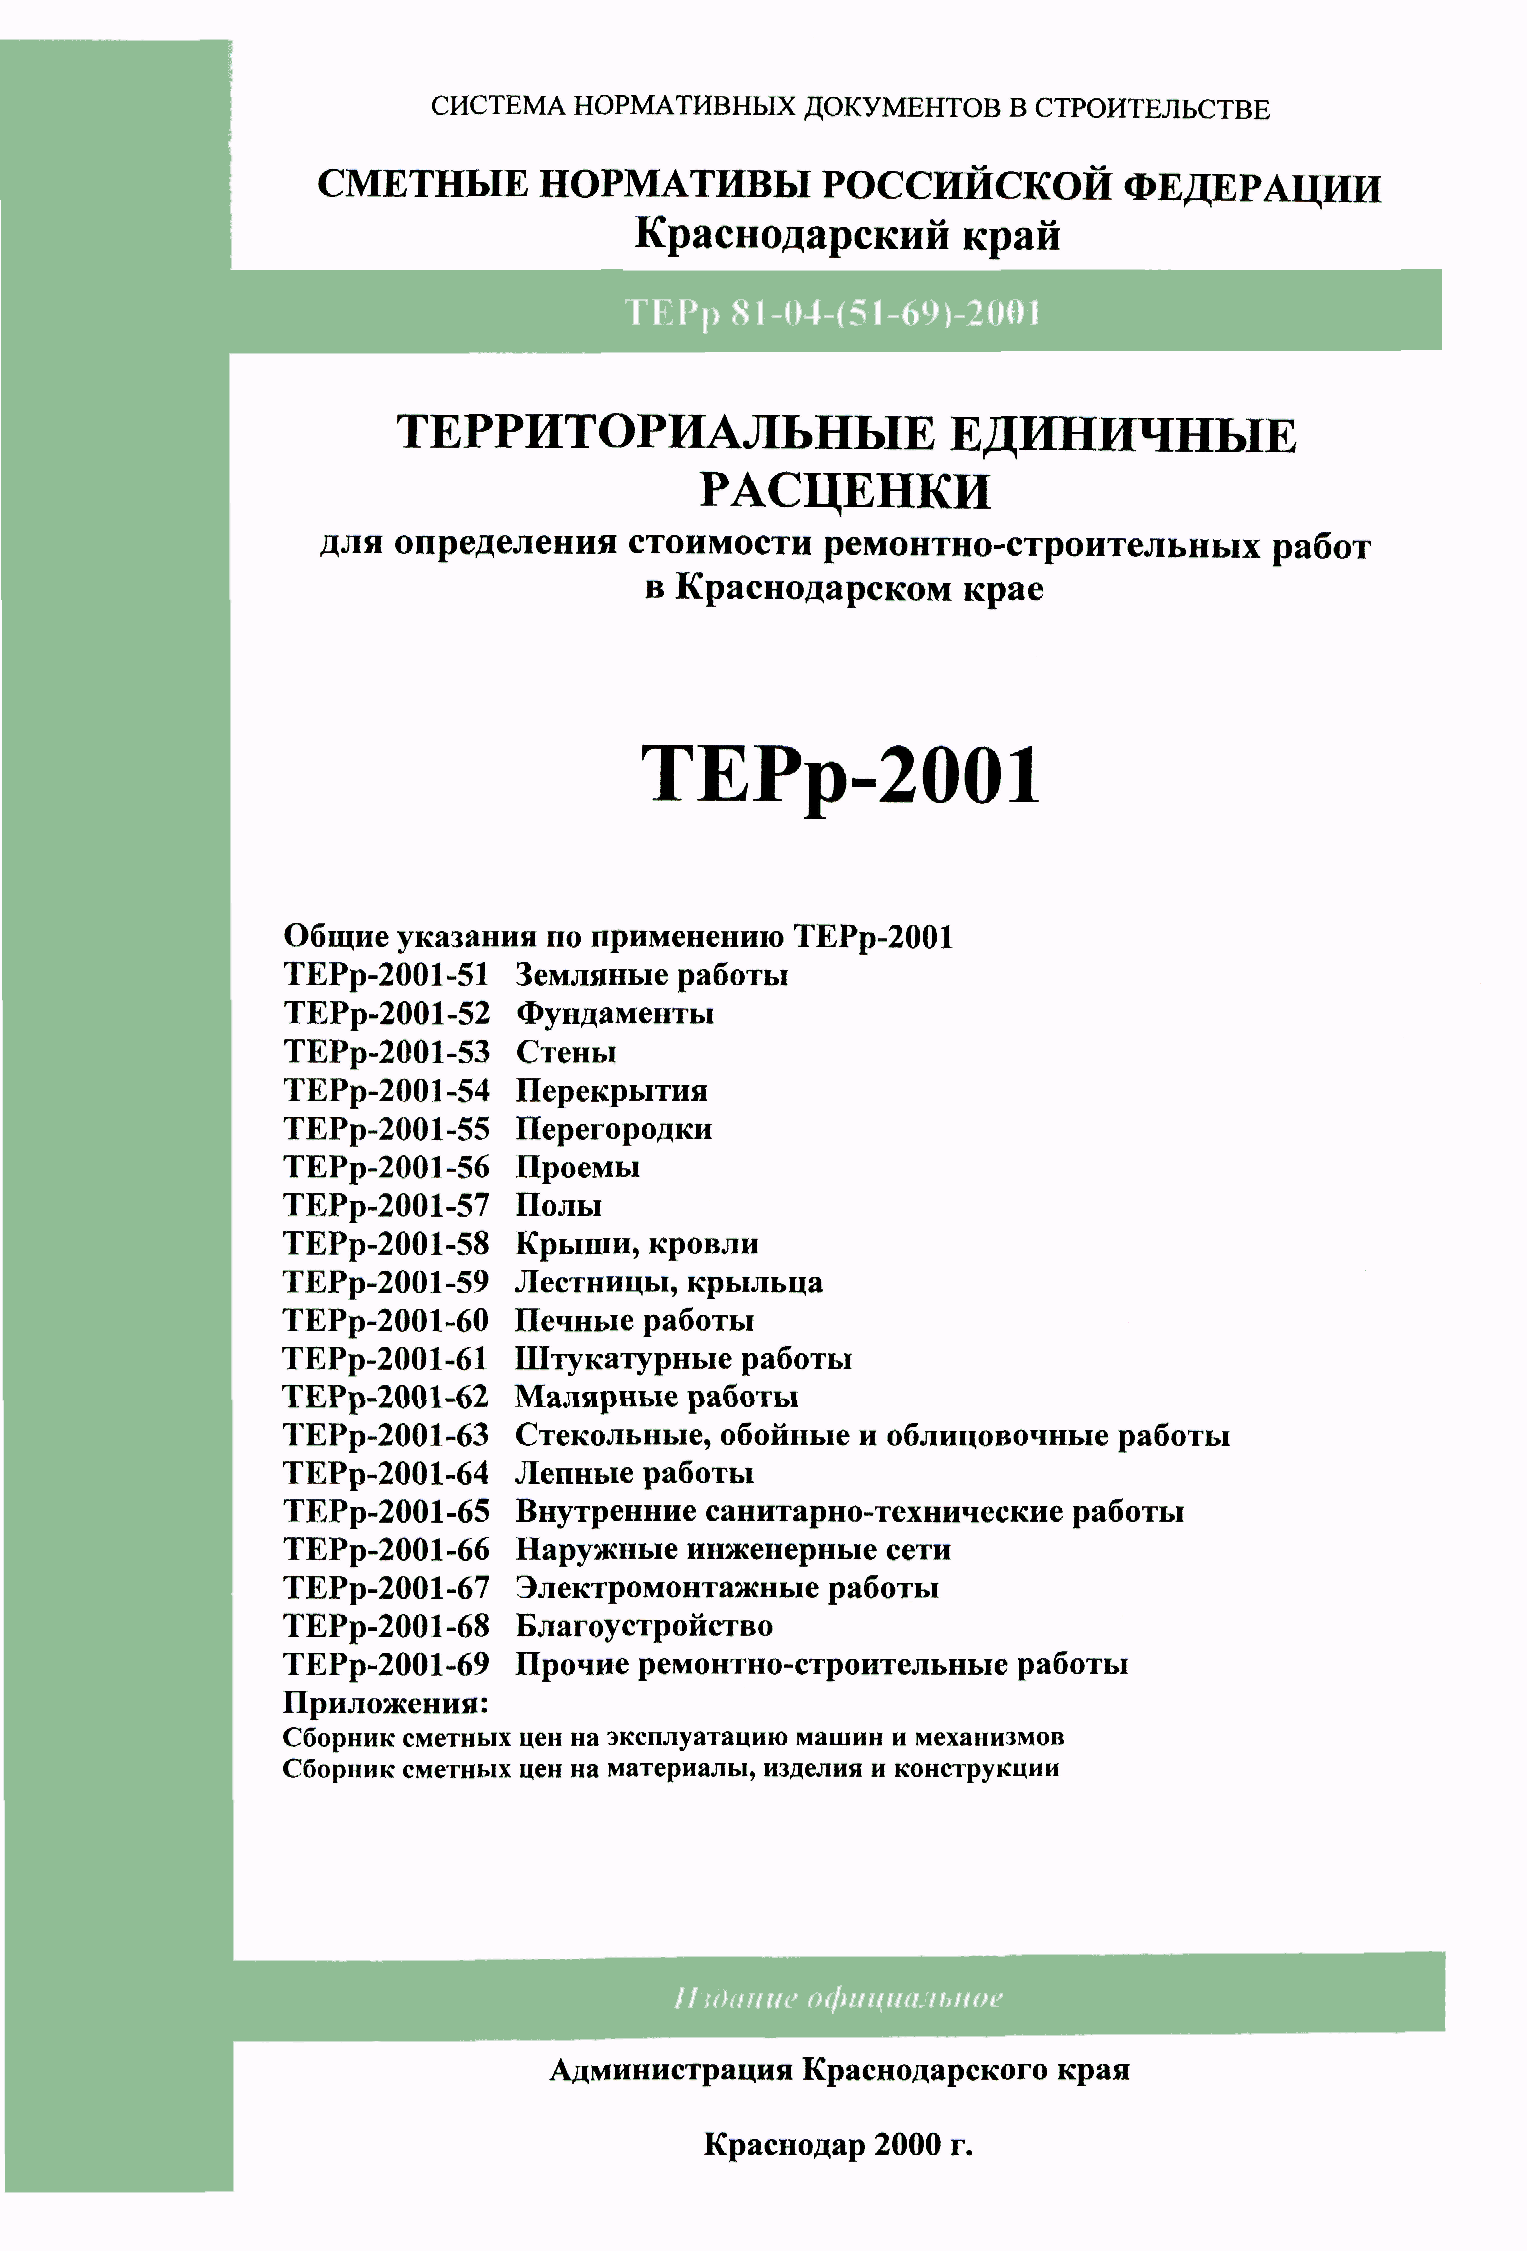 ТЕРр Краснодарского края 2001-51